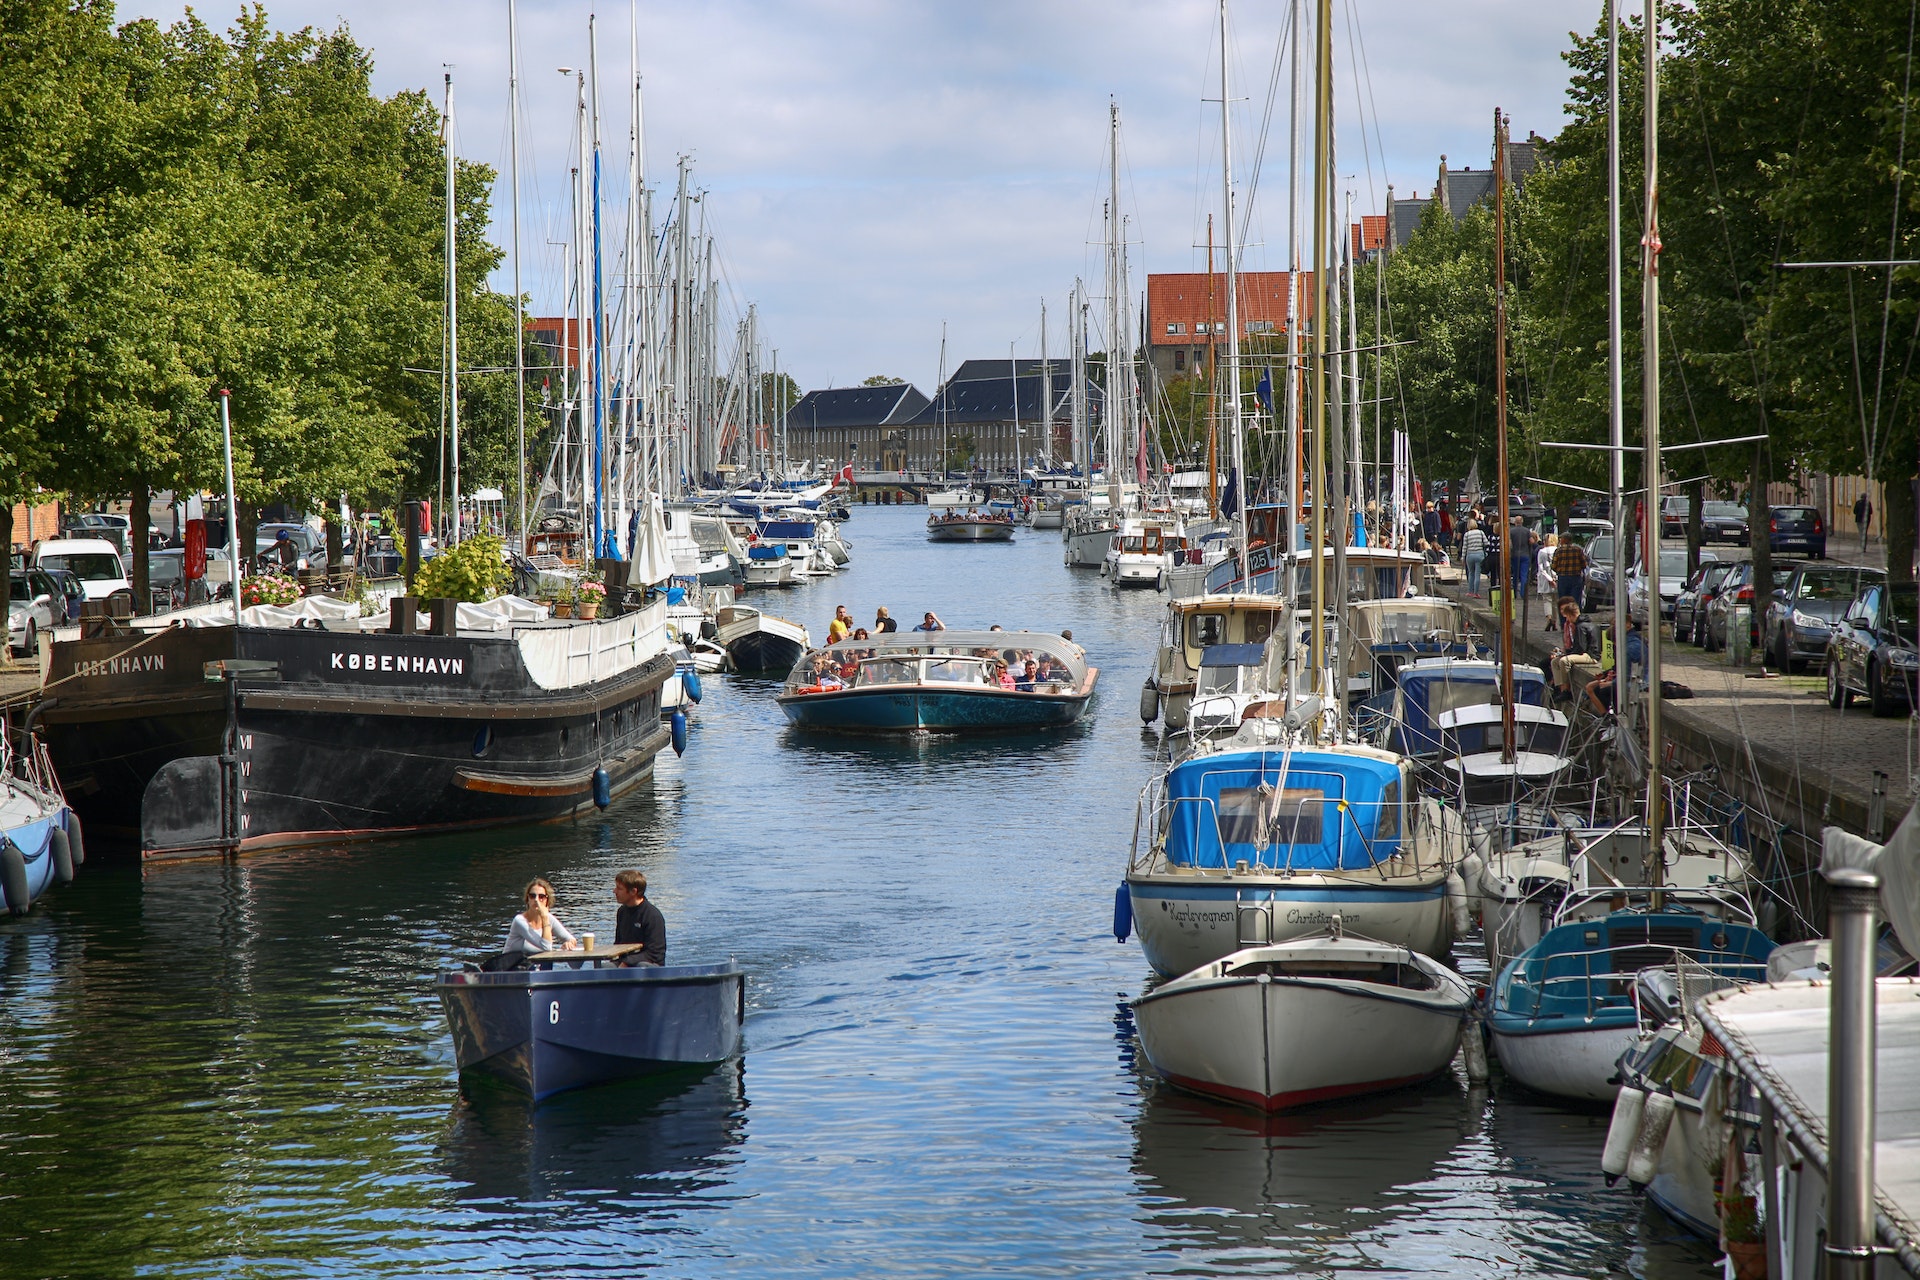 Boats on the canal in Copenhagen, Denmark